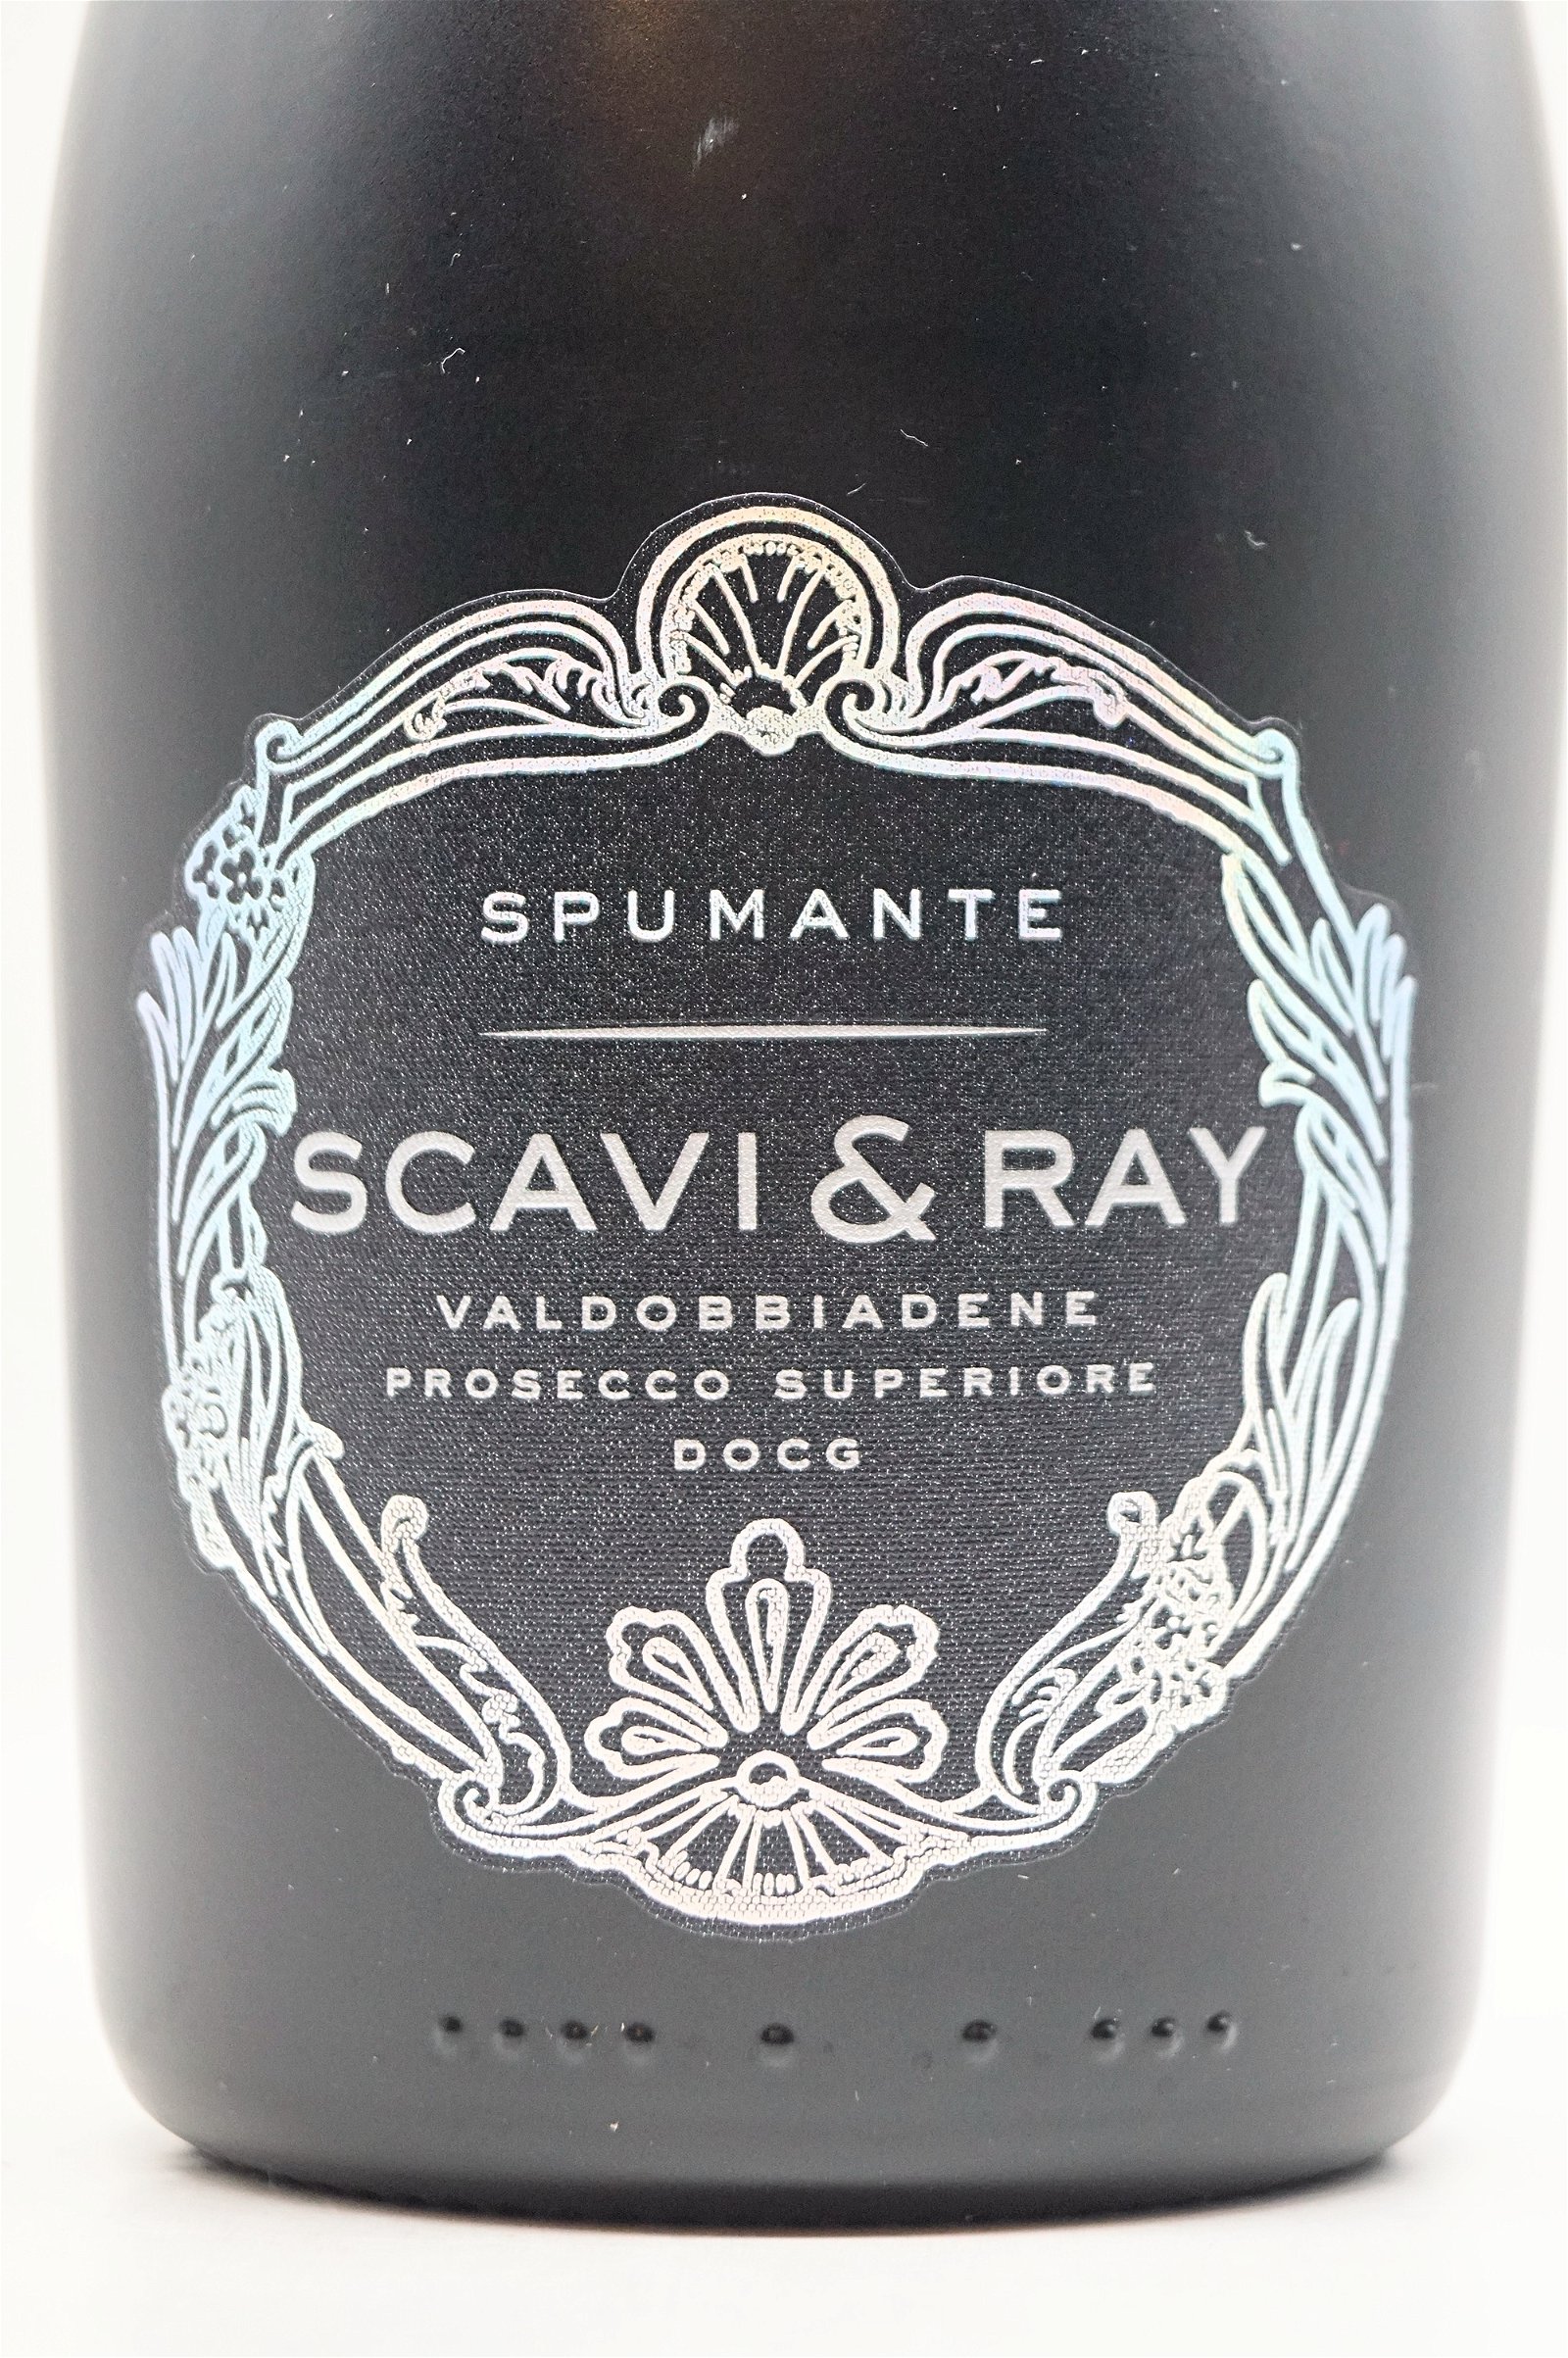 Scavi & Ray Prosecco Superiore DOCG